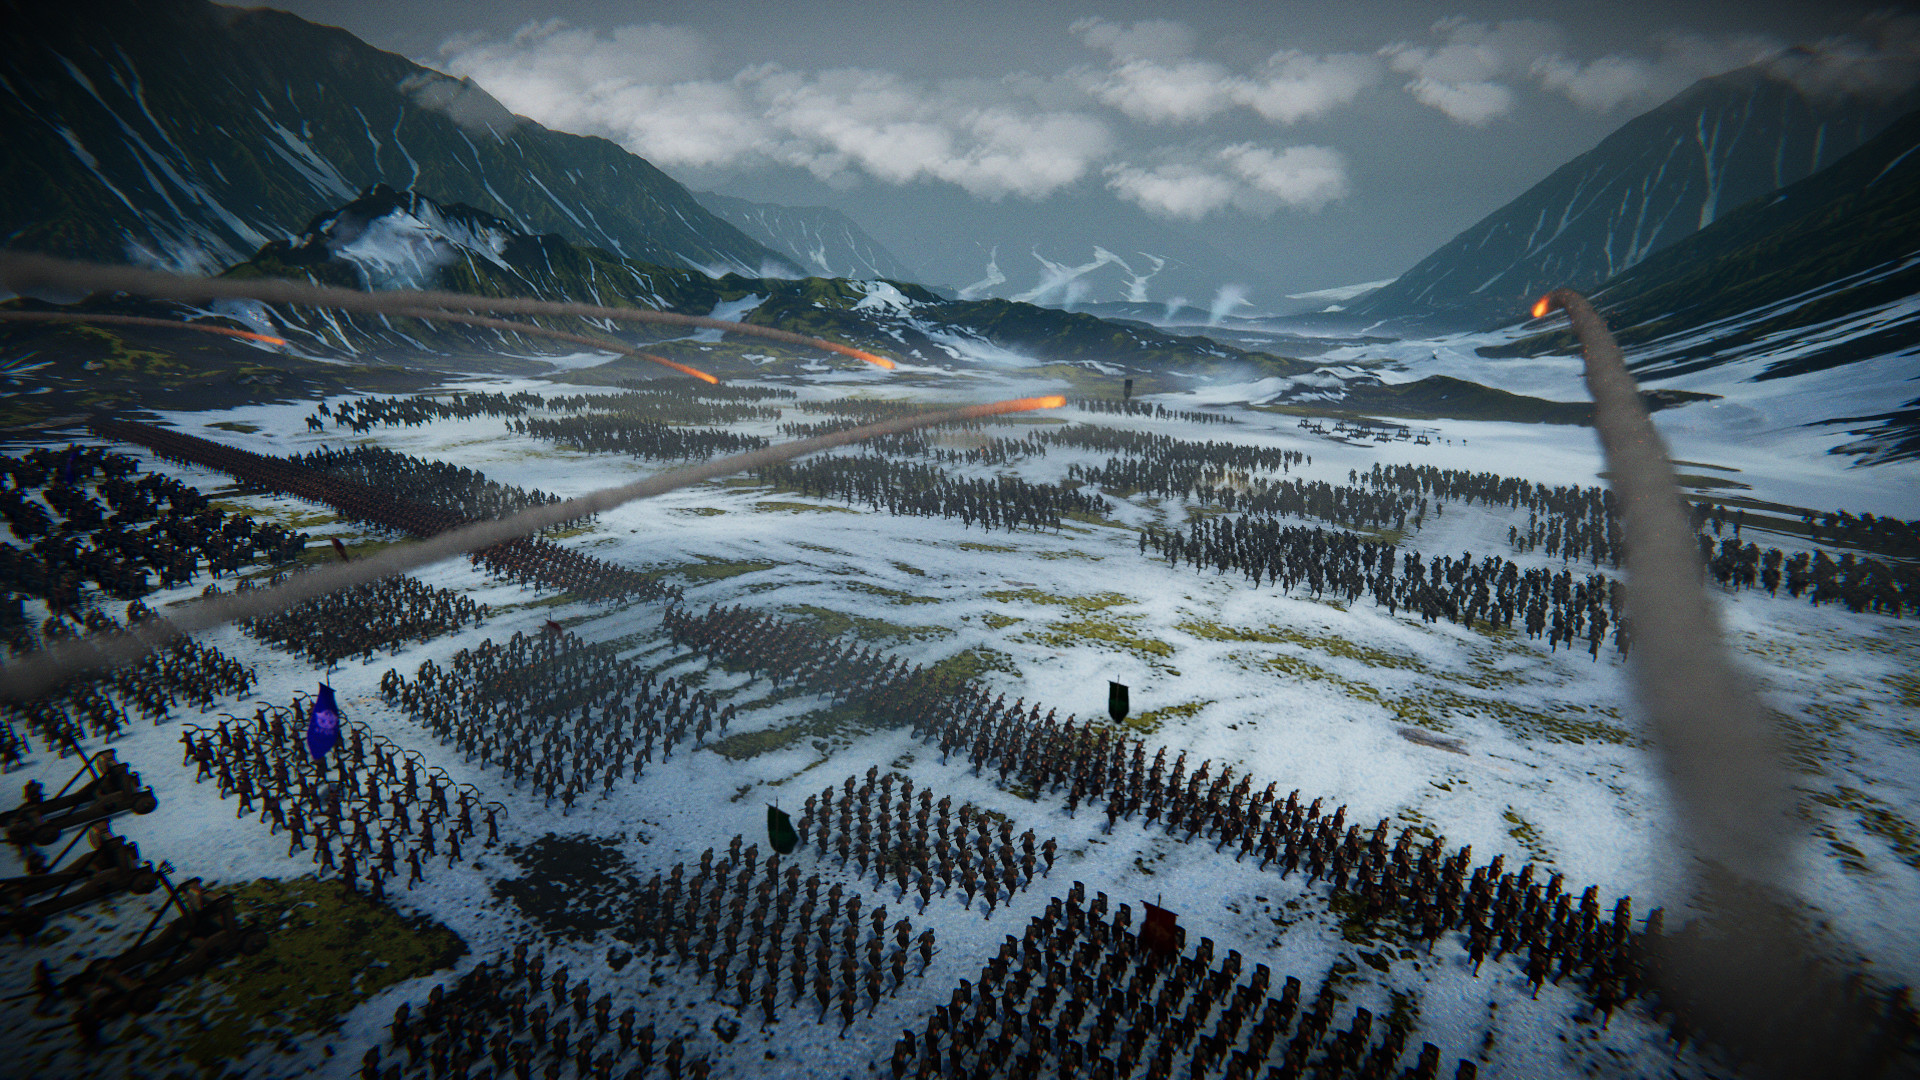 Roman Empire Wars Announced for PC